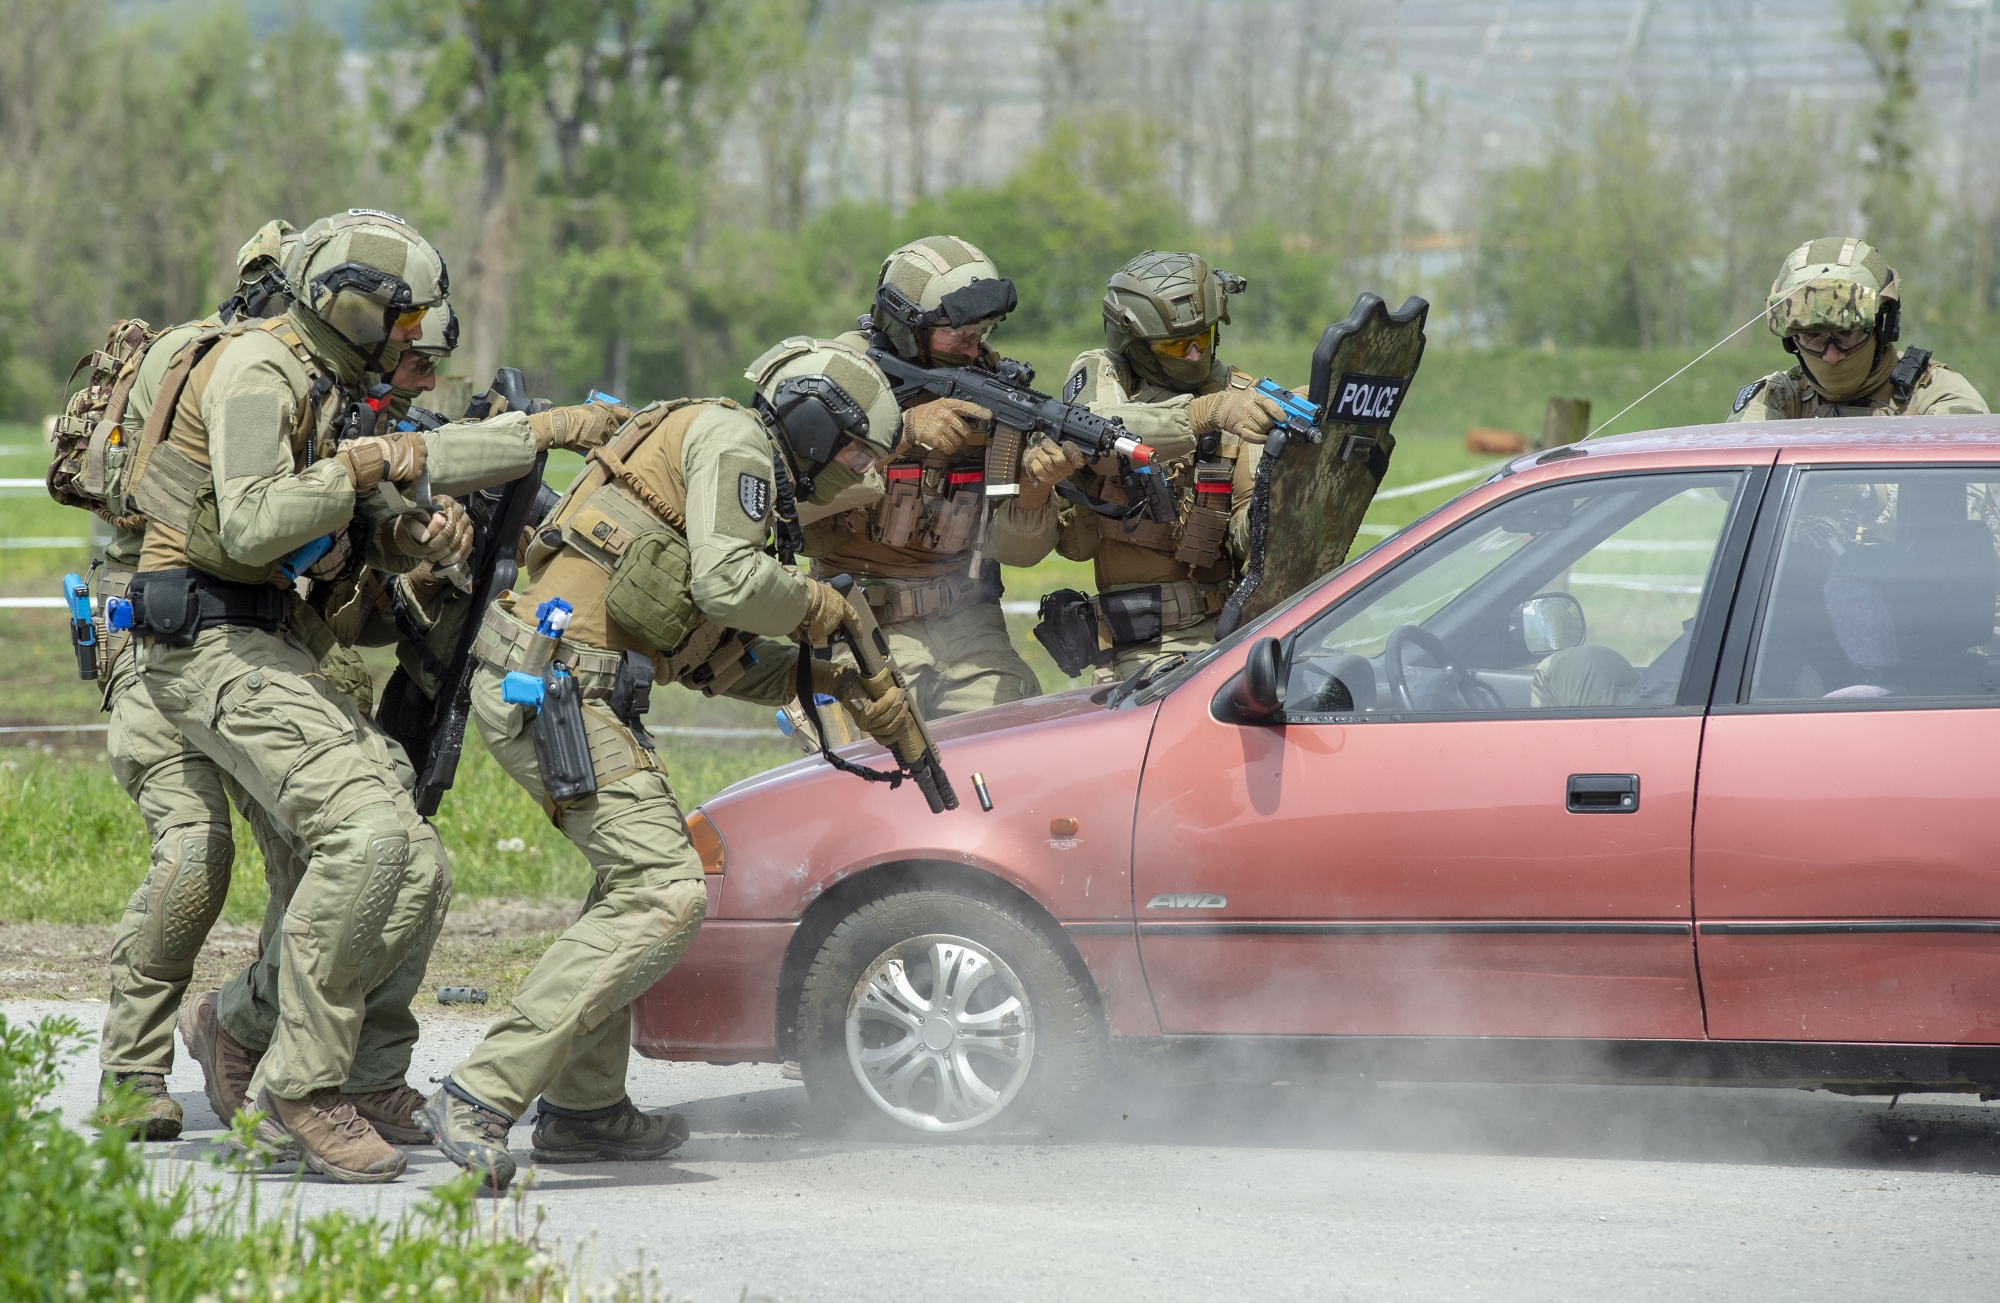 Les troupes d'élite de la police cantonale face à deux «terroristes» qui font feu à la Kalachnikov. La réaction des agents fut impressionnante.